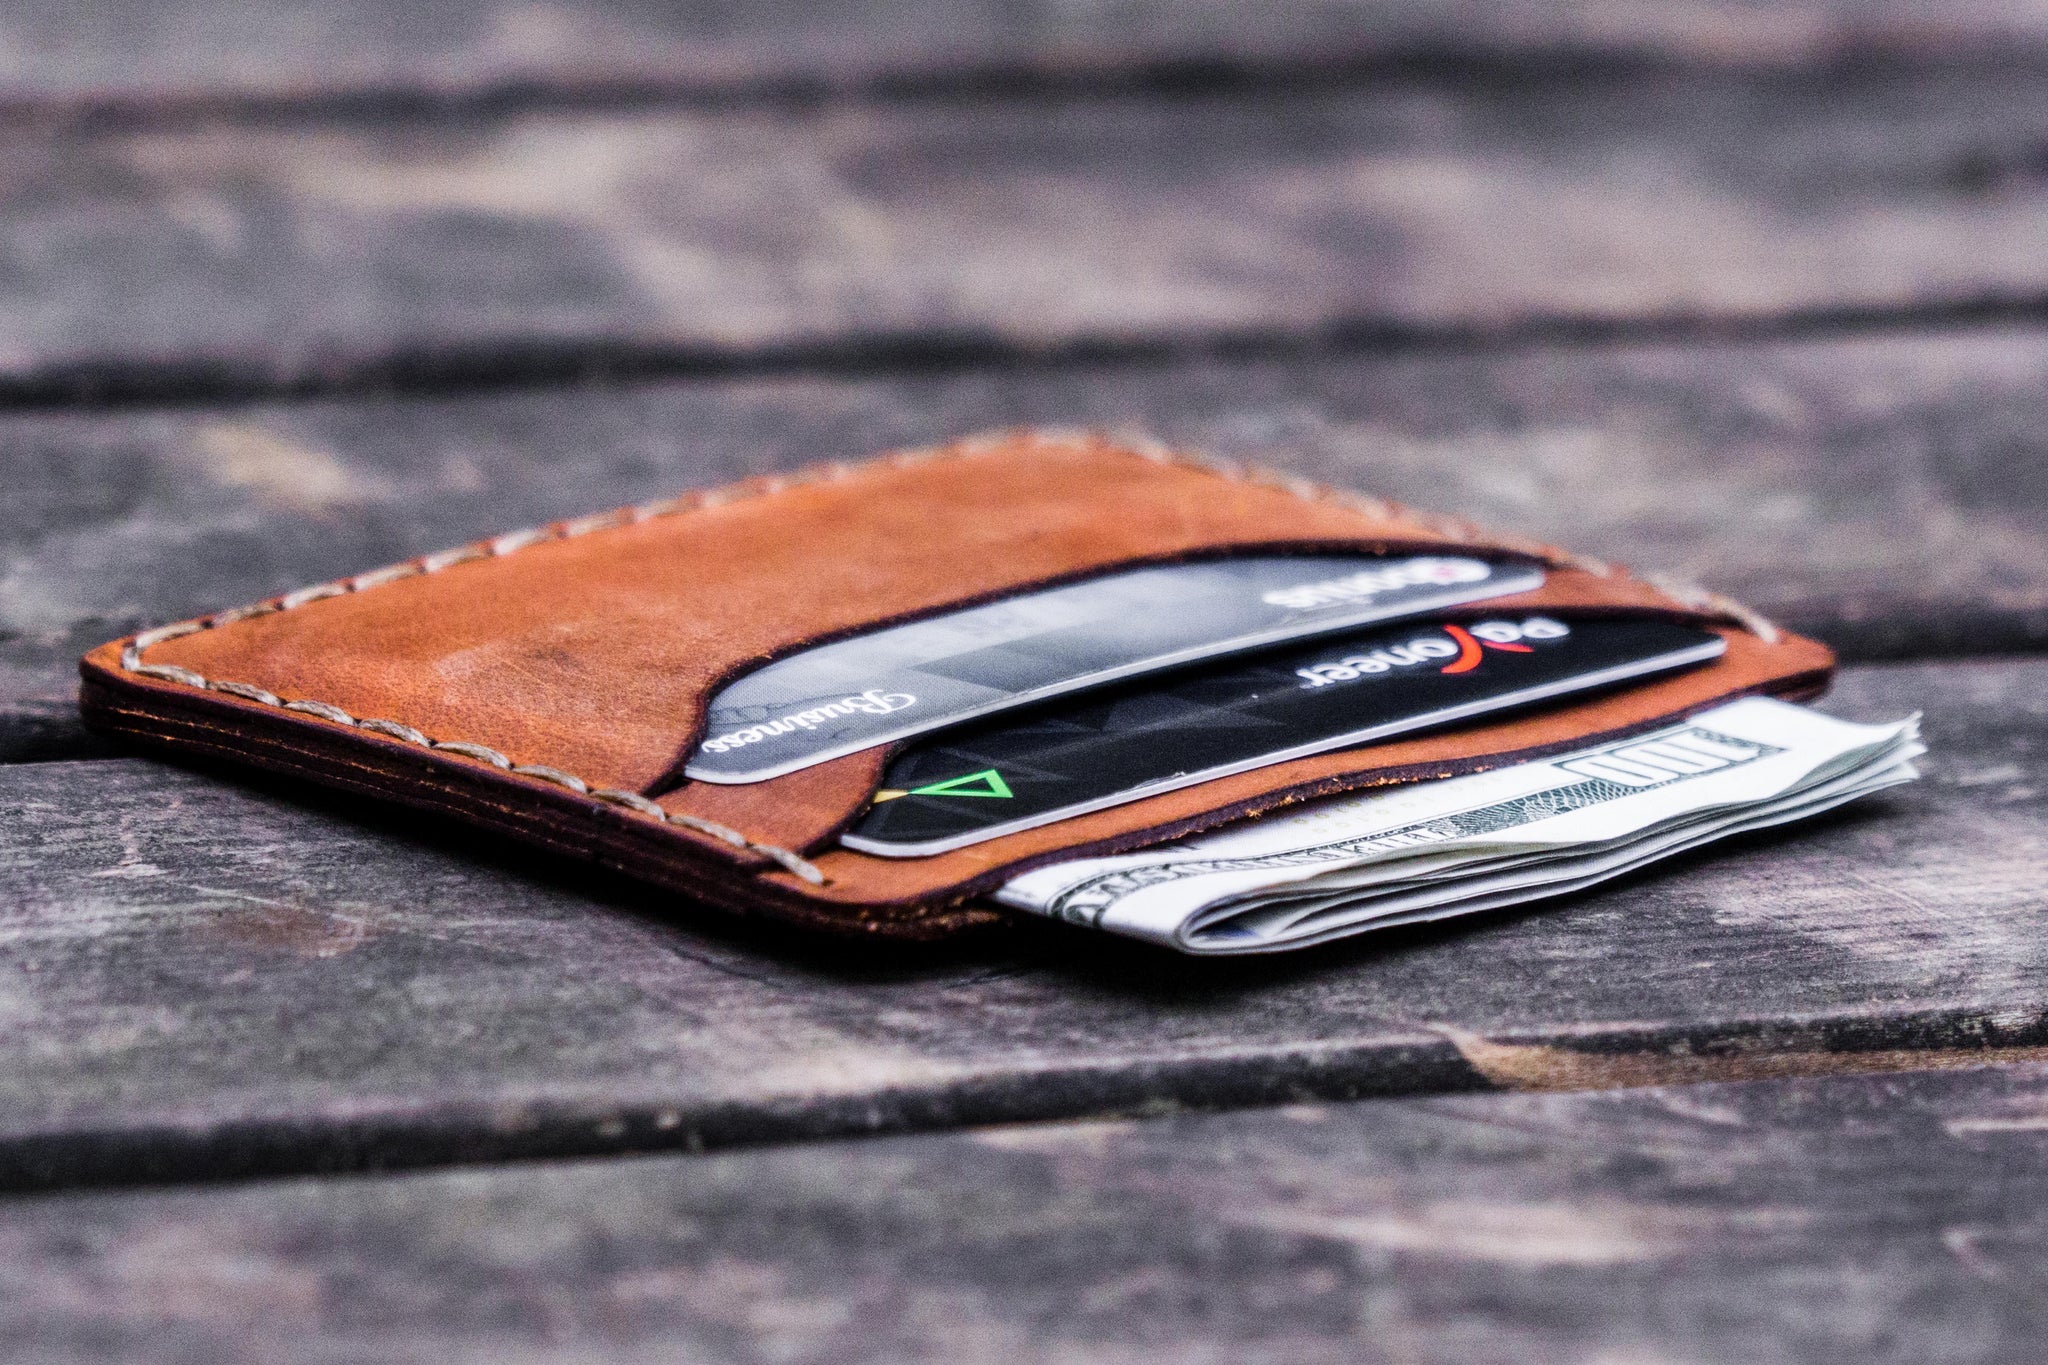 Mens Slim Wallet - Best Handmade Leather Slim Wallets 2021..